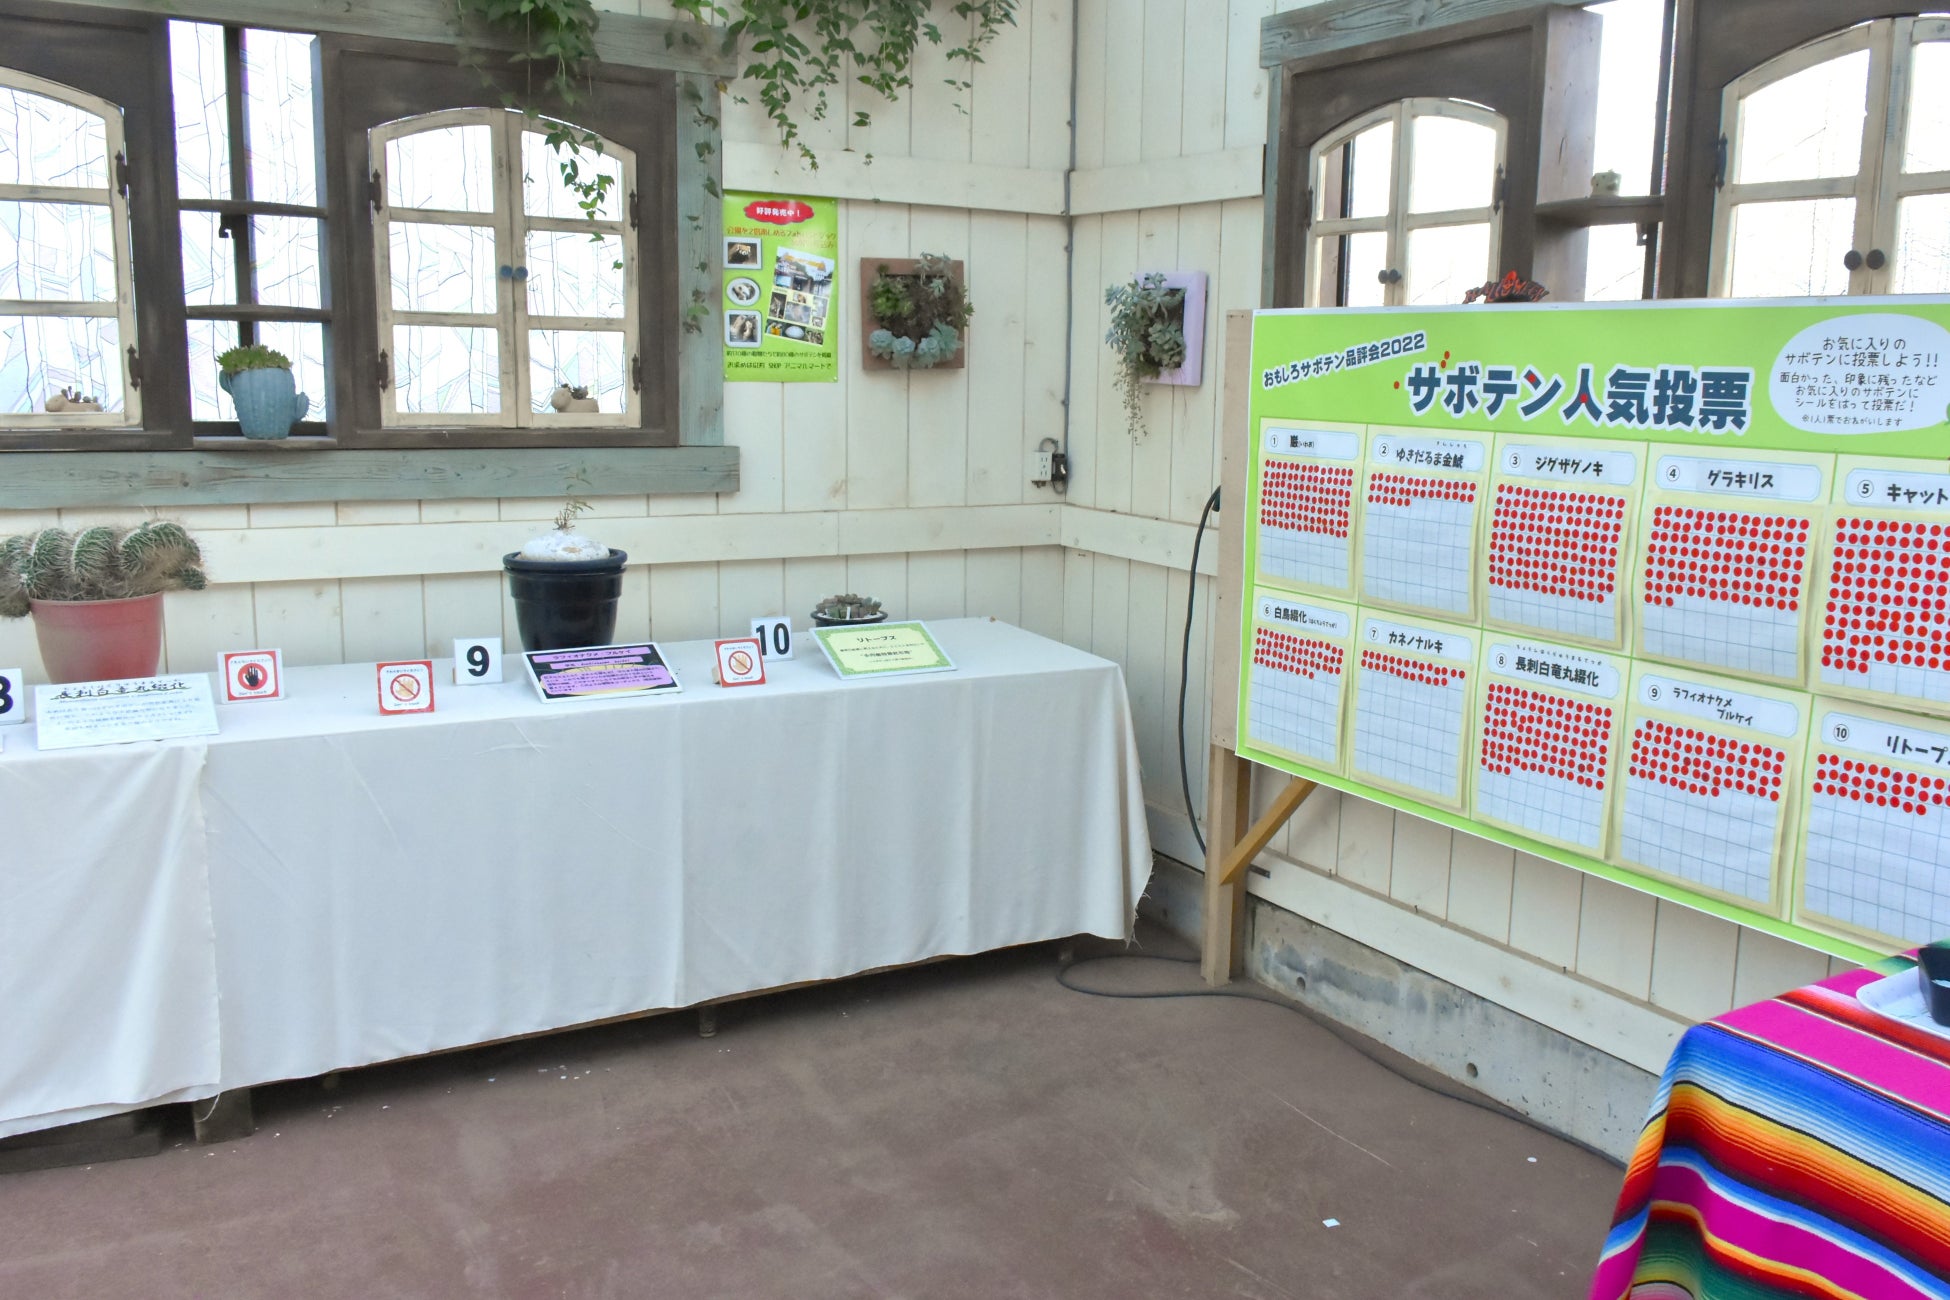 伊豆シャボテン動物公園にて「第10回おもしろサボテン品評会」開催